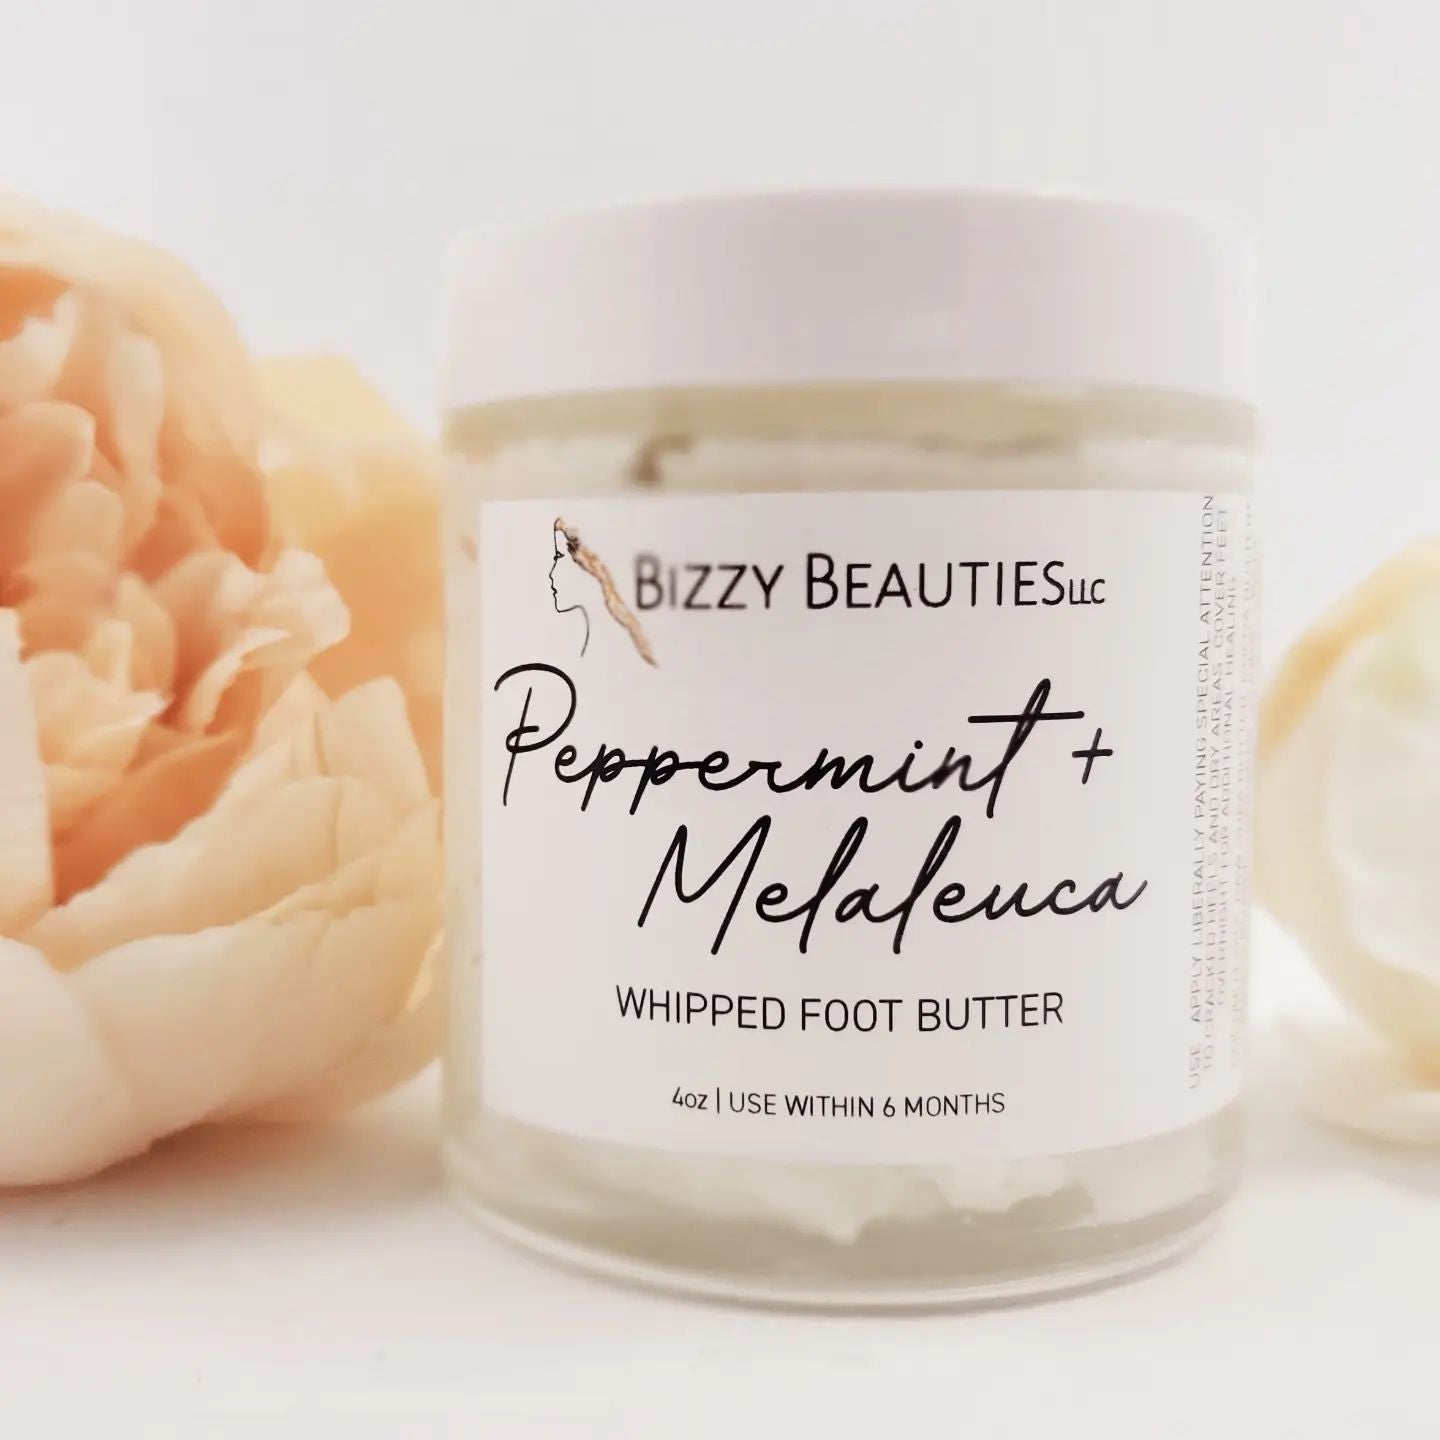 Bizzy Beauties LLC Peppermint Melaleuca Foot Butter